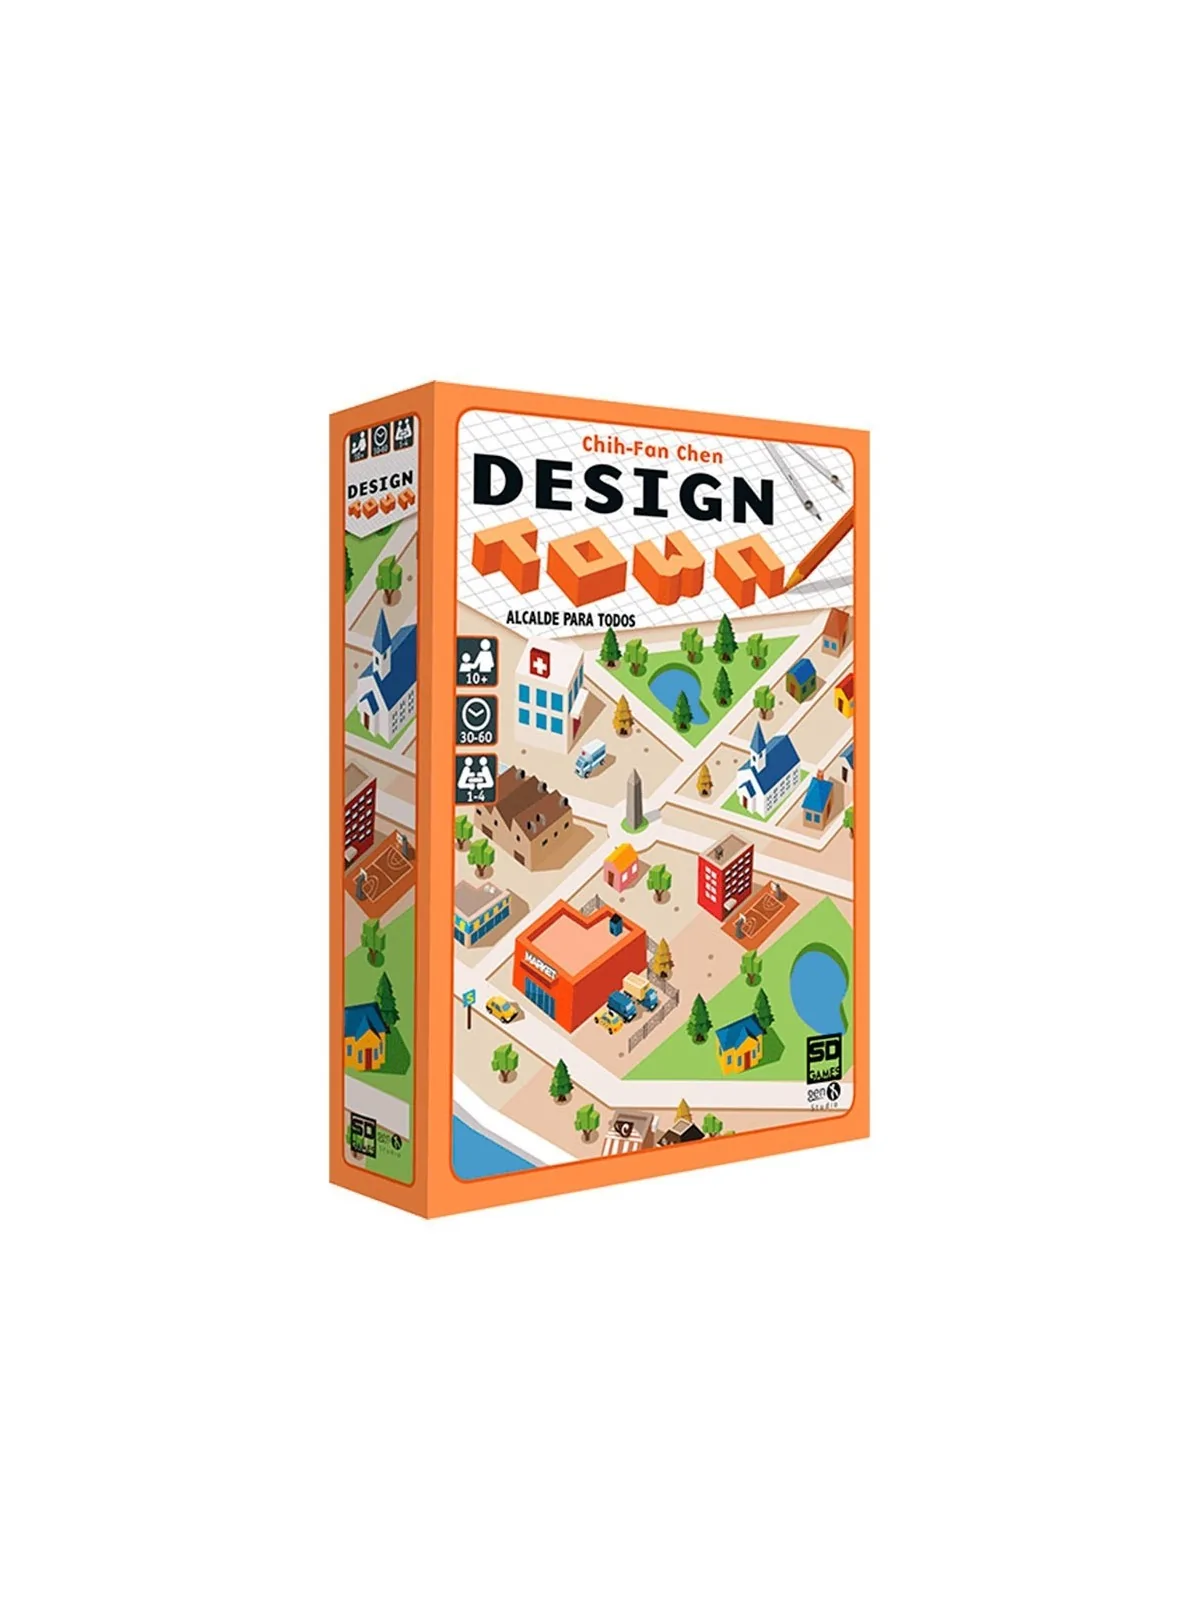 Comprar Design Town barato al mejor precio 13,45 € de SD GAMES